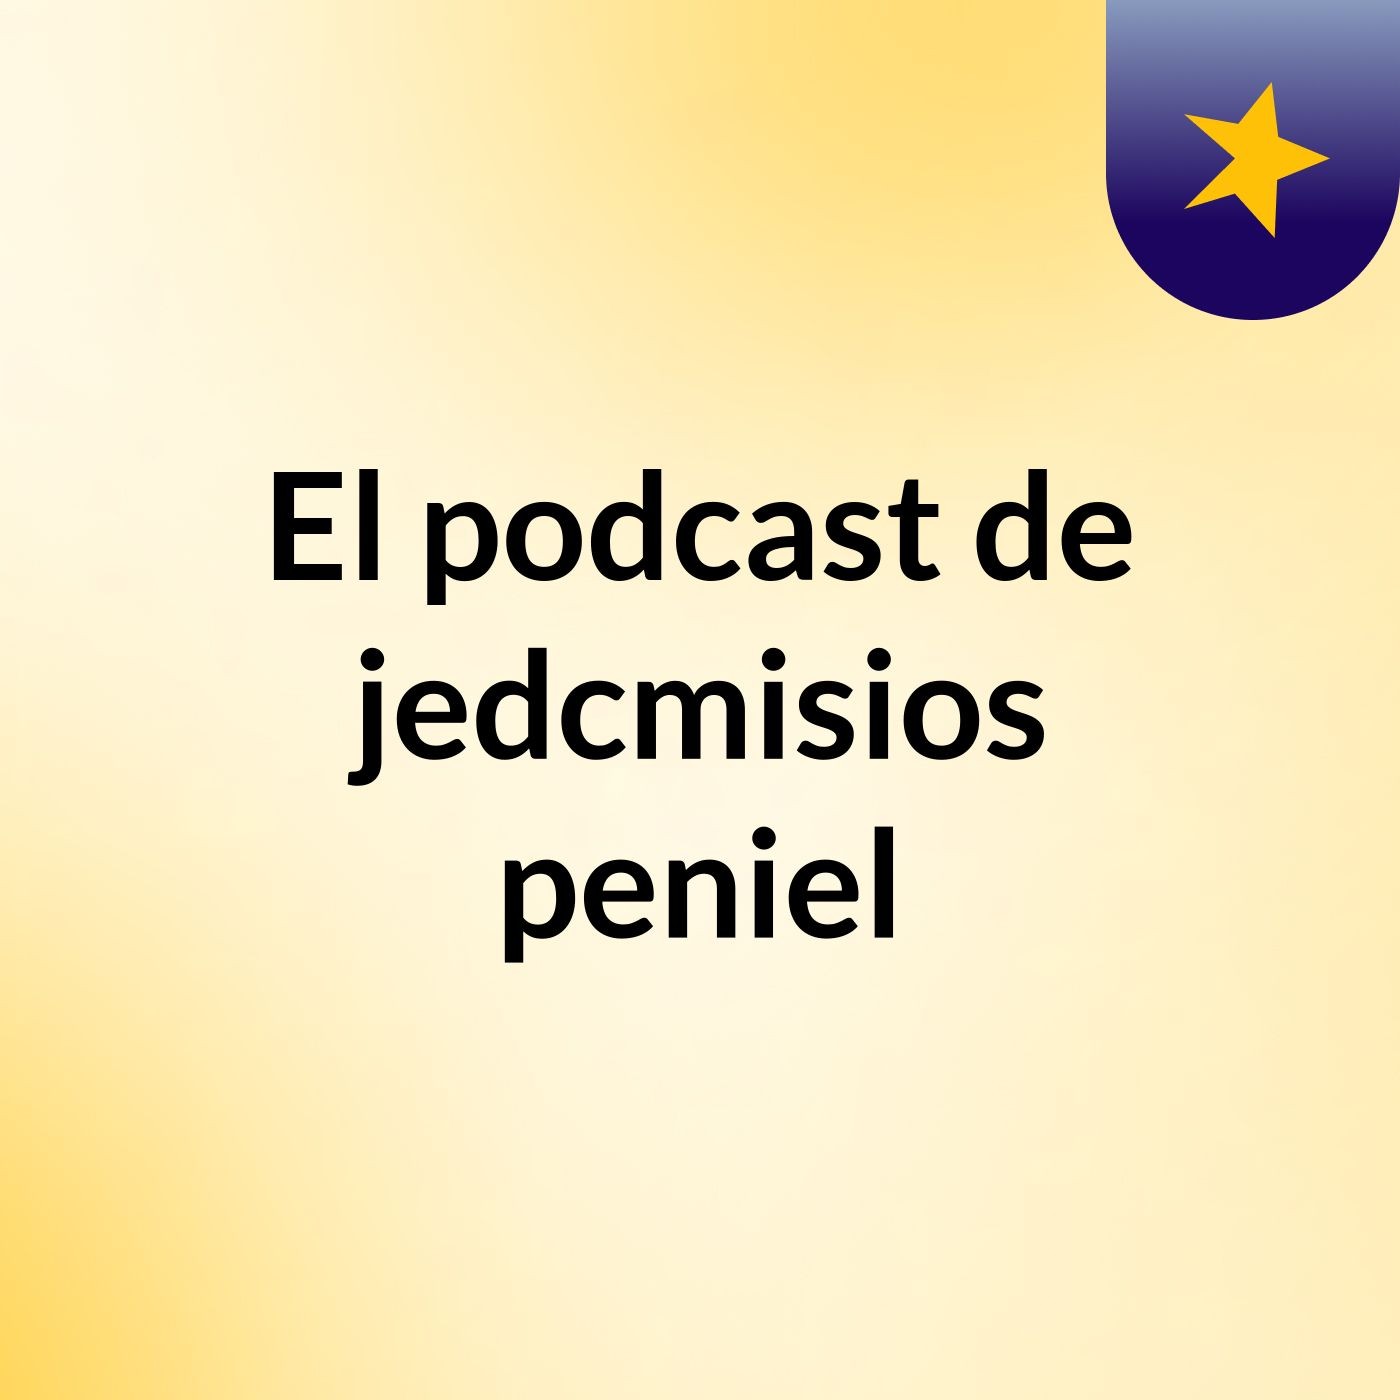 El podcast de jedcmisios peniel